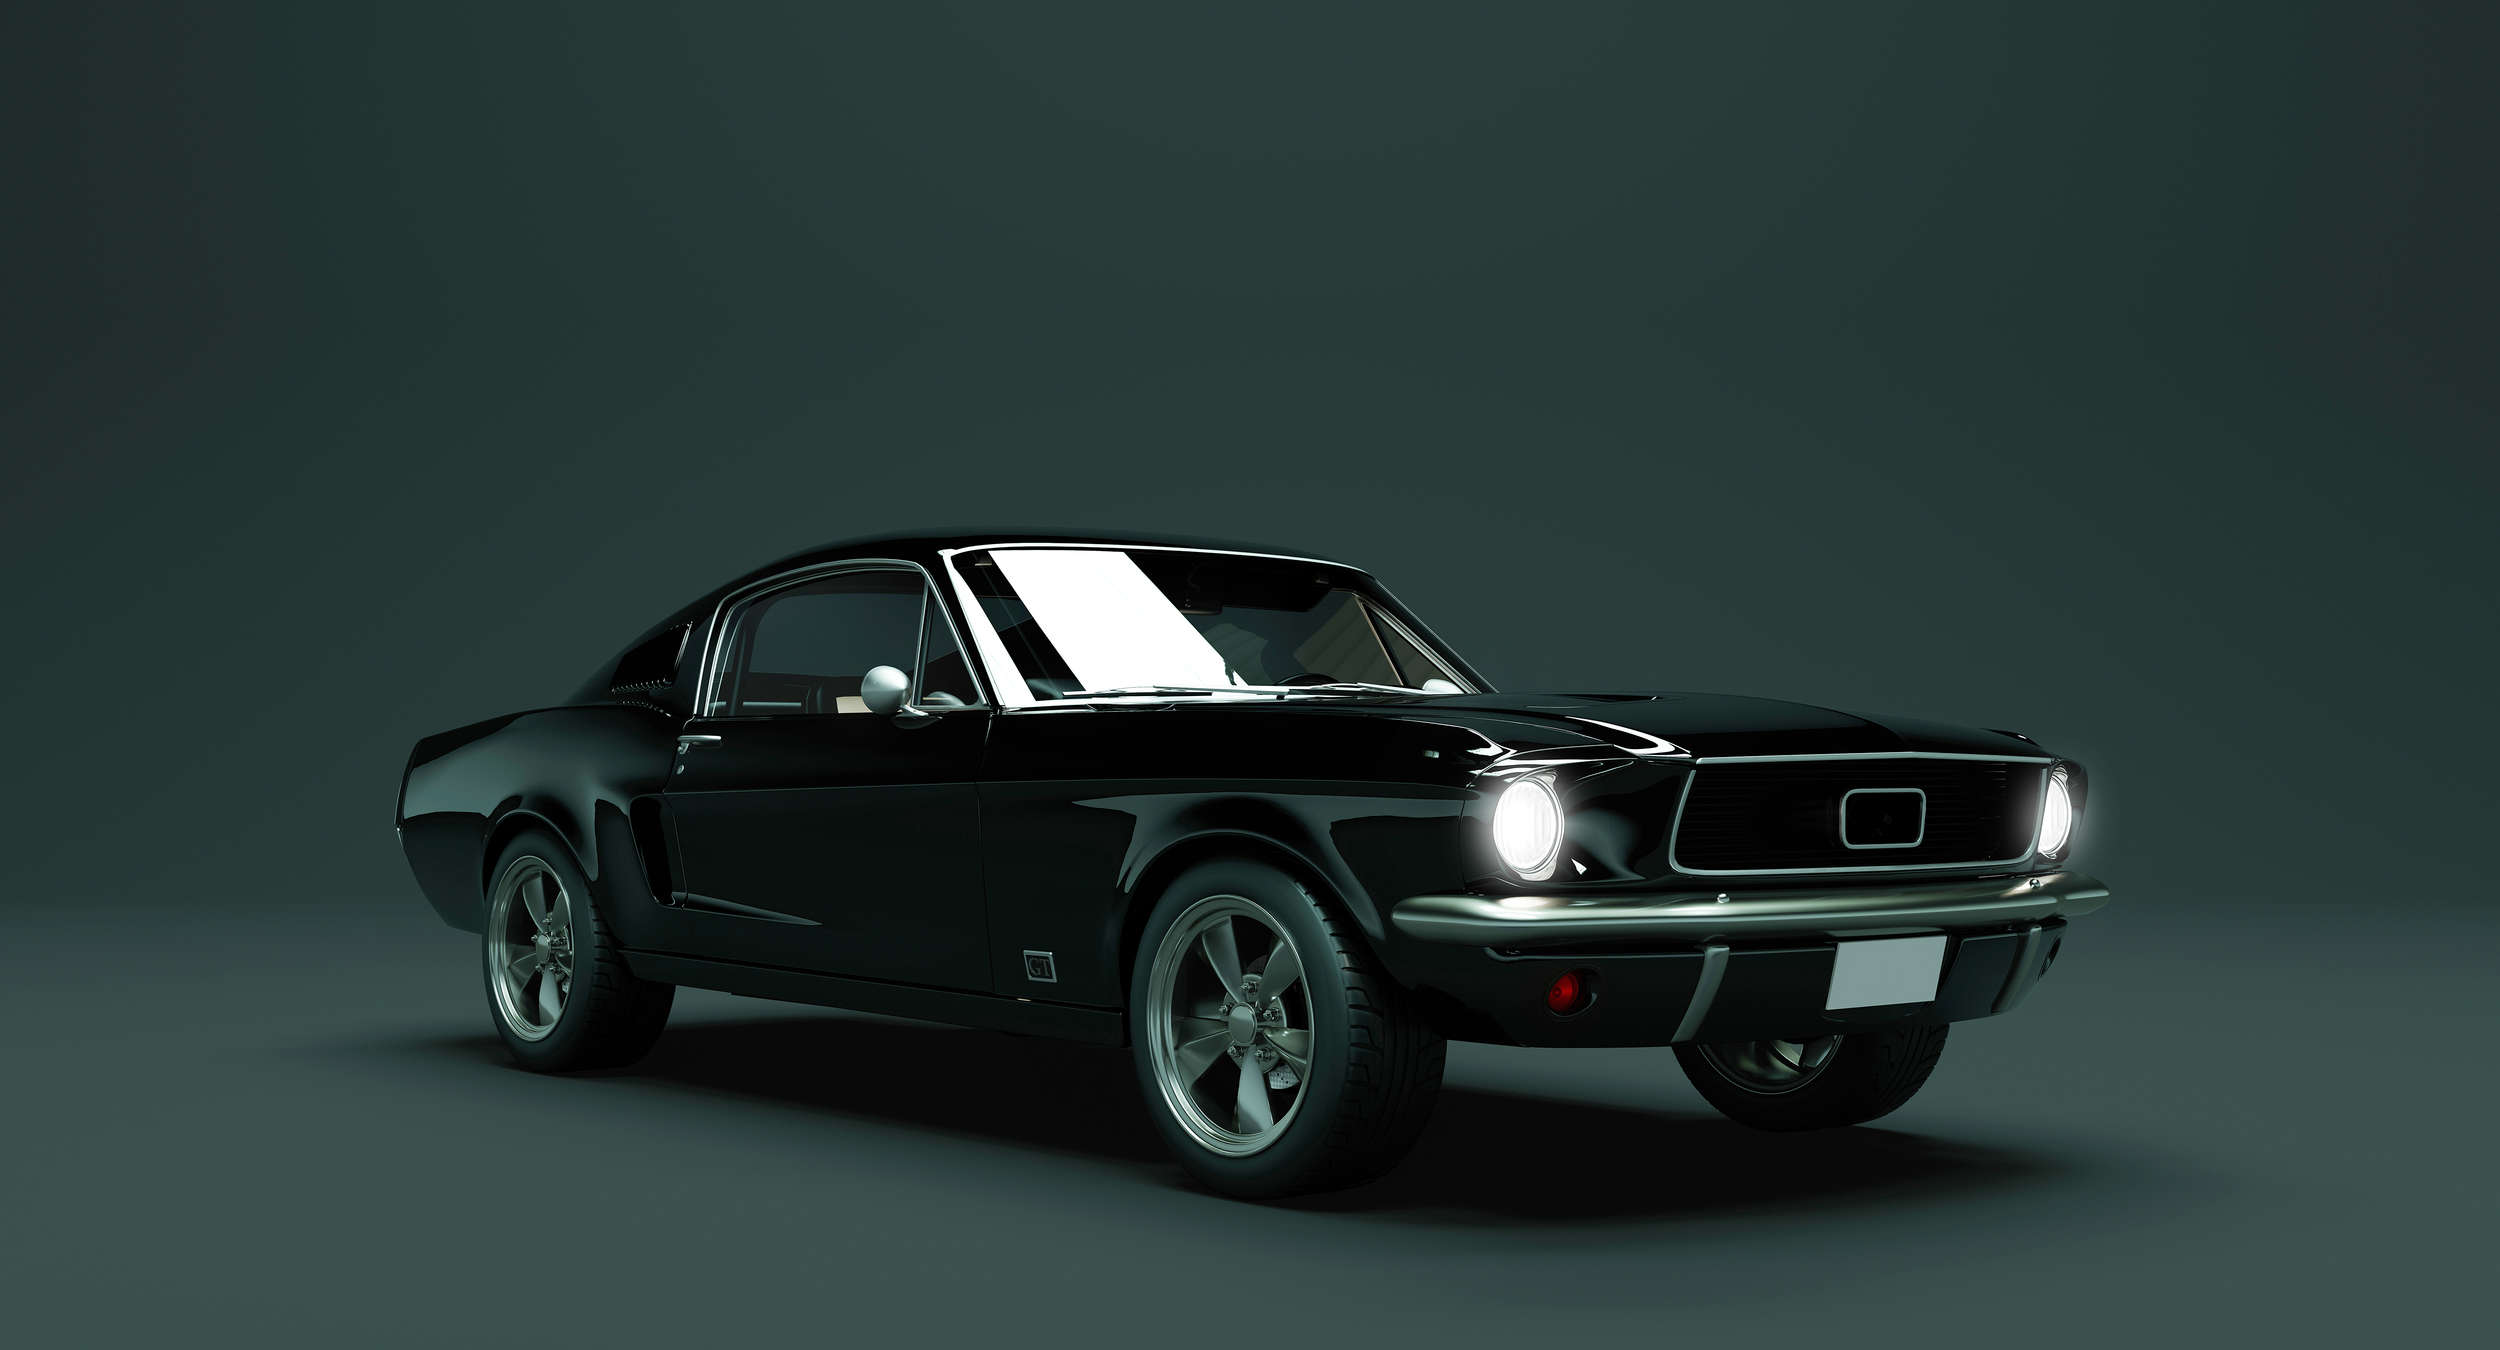             Mustang 2 - Fotomural, Coche de época Mustang 1968 - Azul, Negro | Vellón liso mate
        